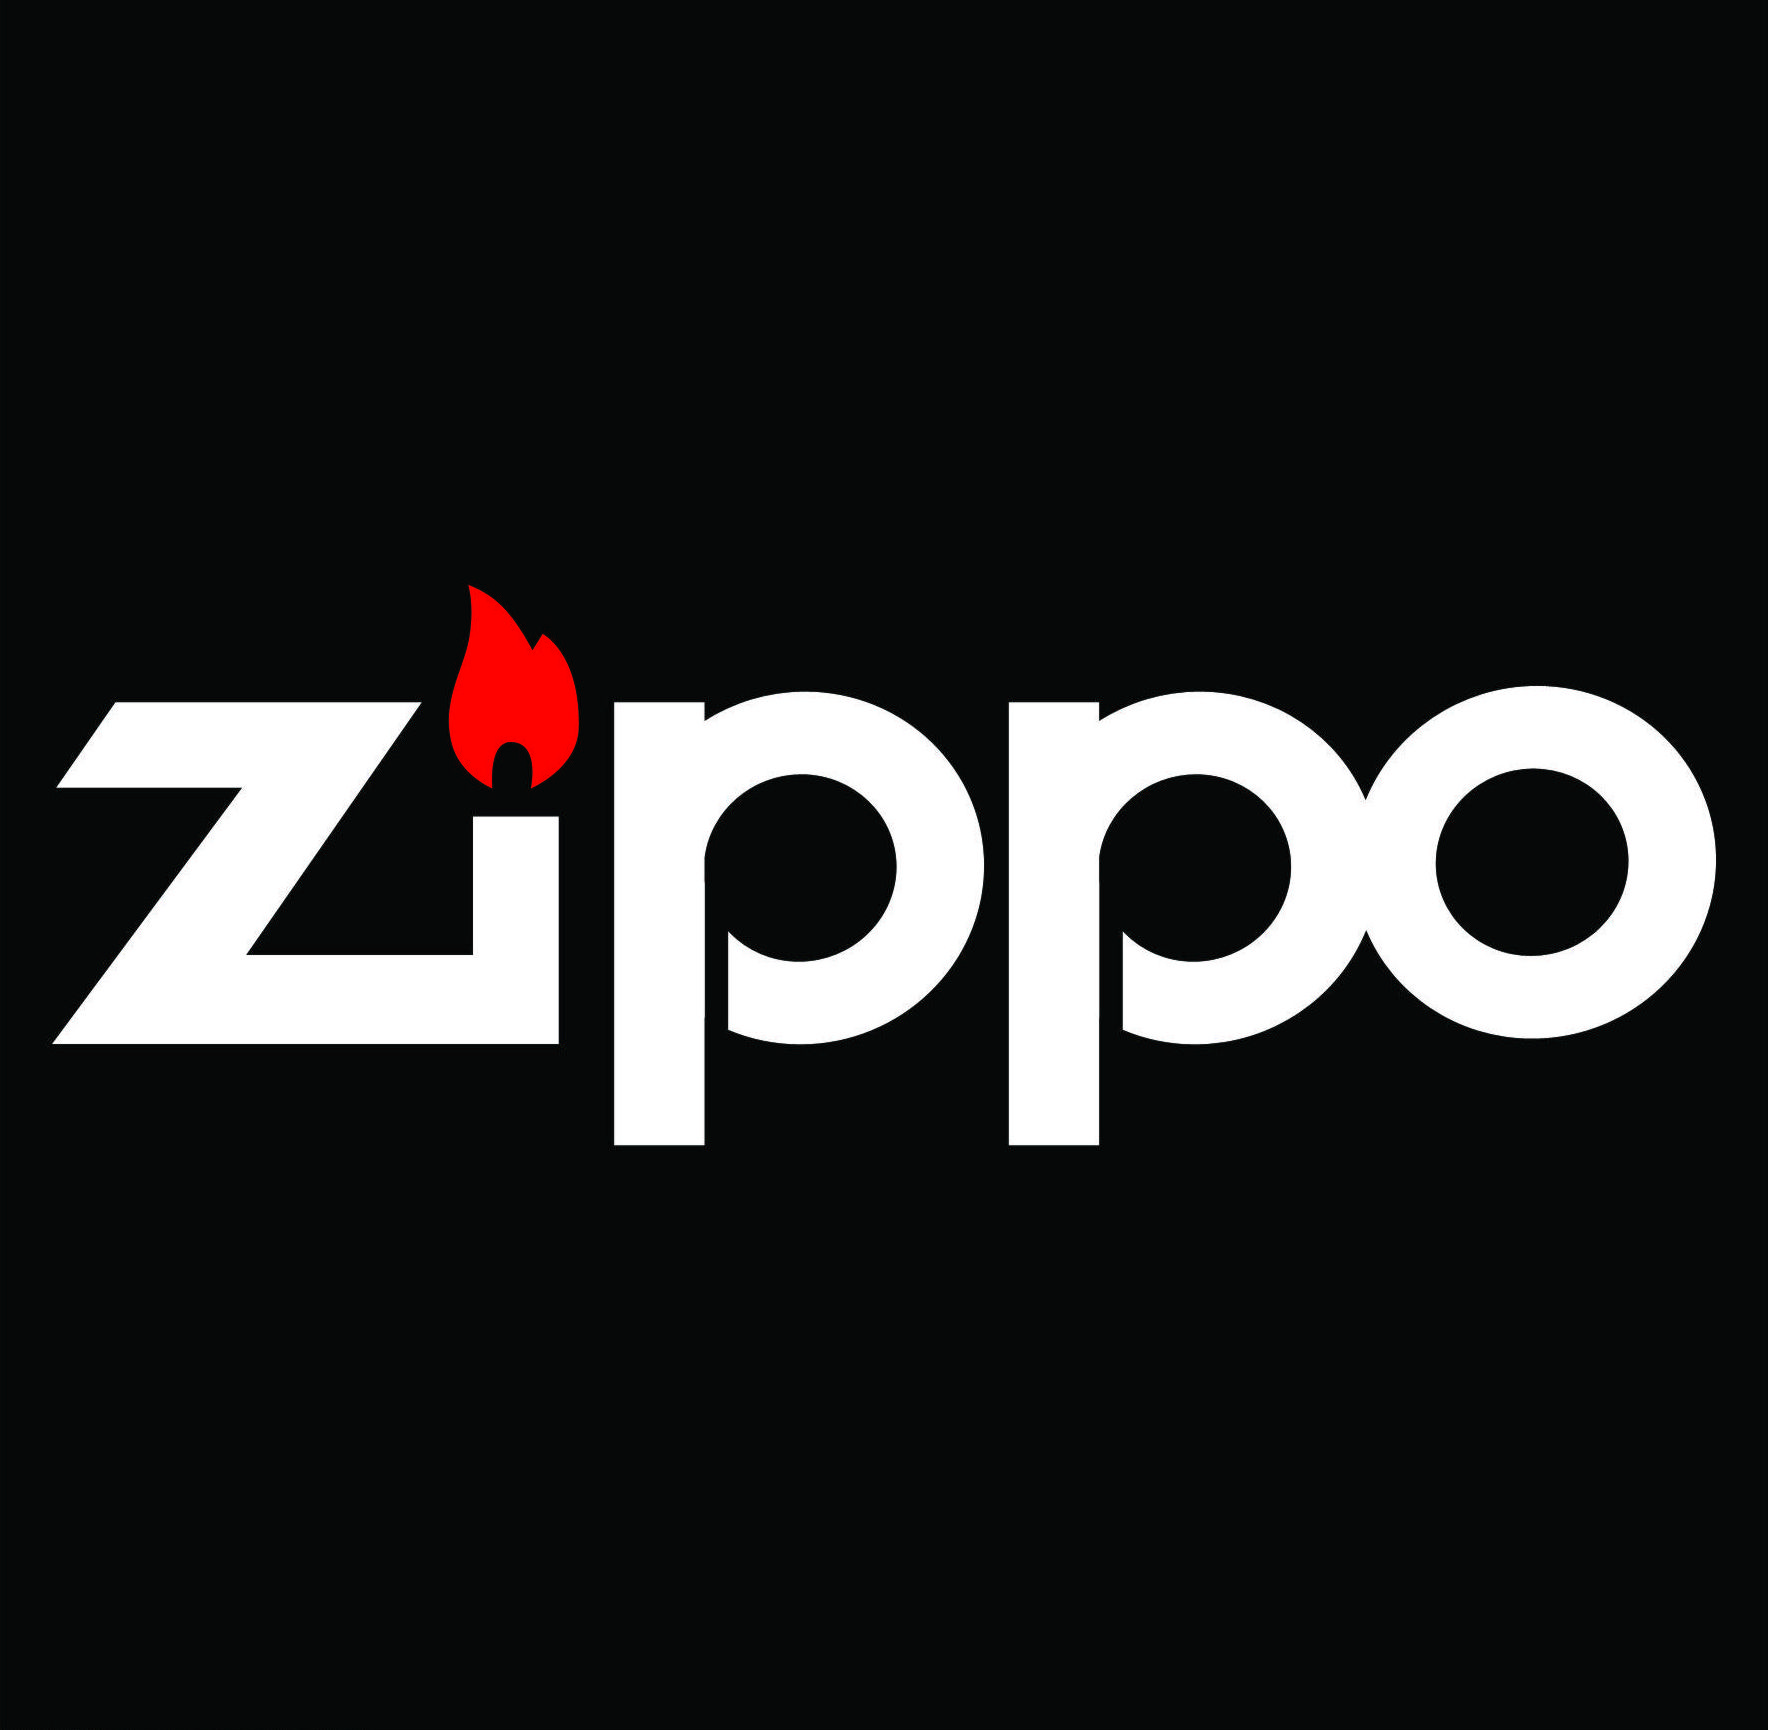 Những Câu Hỏi Thường Gặp Về Bật Lửa Zippo - FAQ (Frequently Asked Questions)